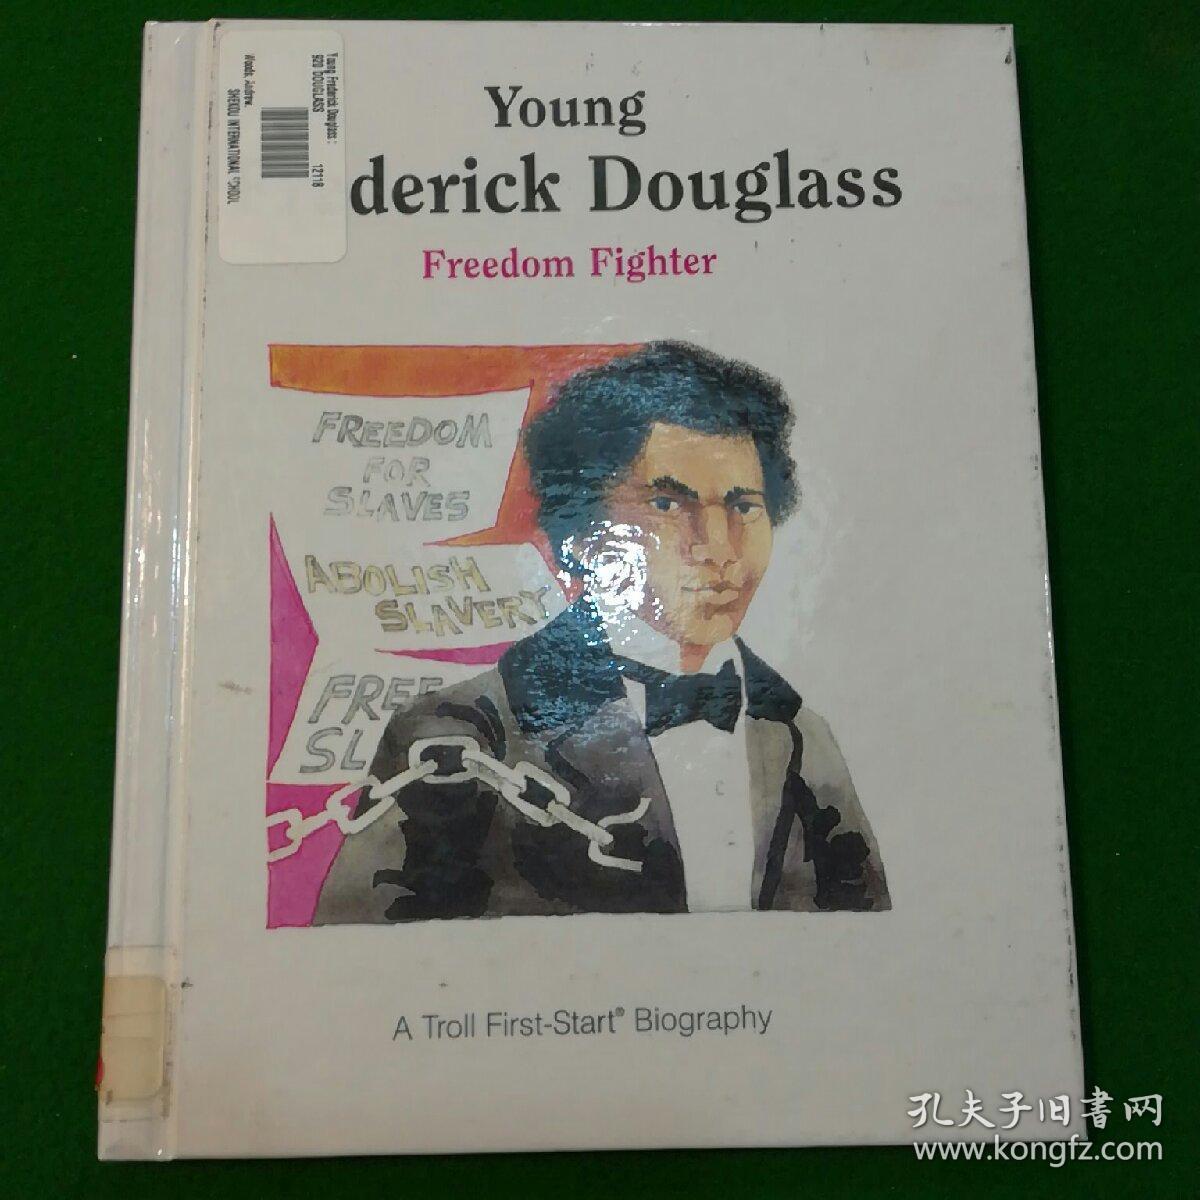 Young derick Douglass